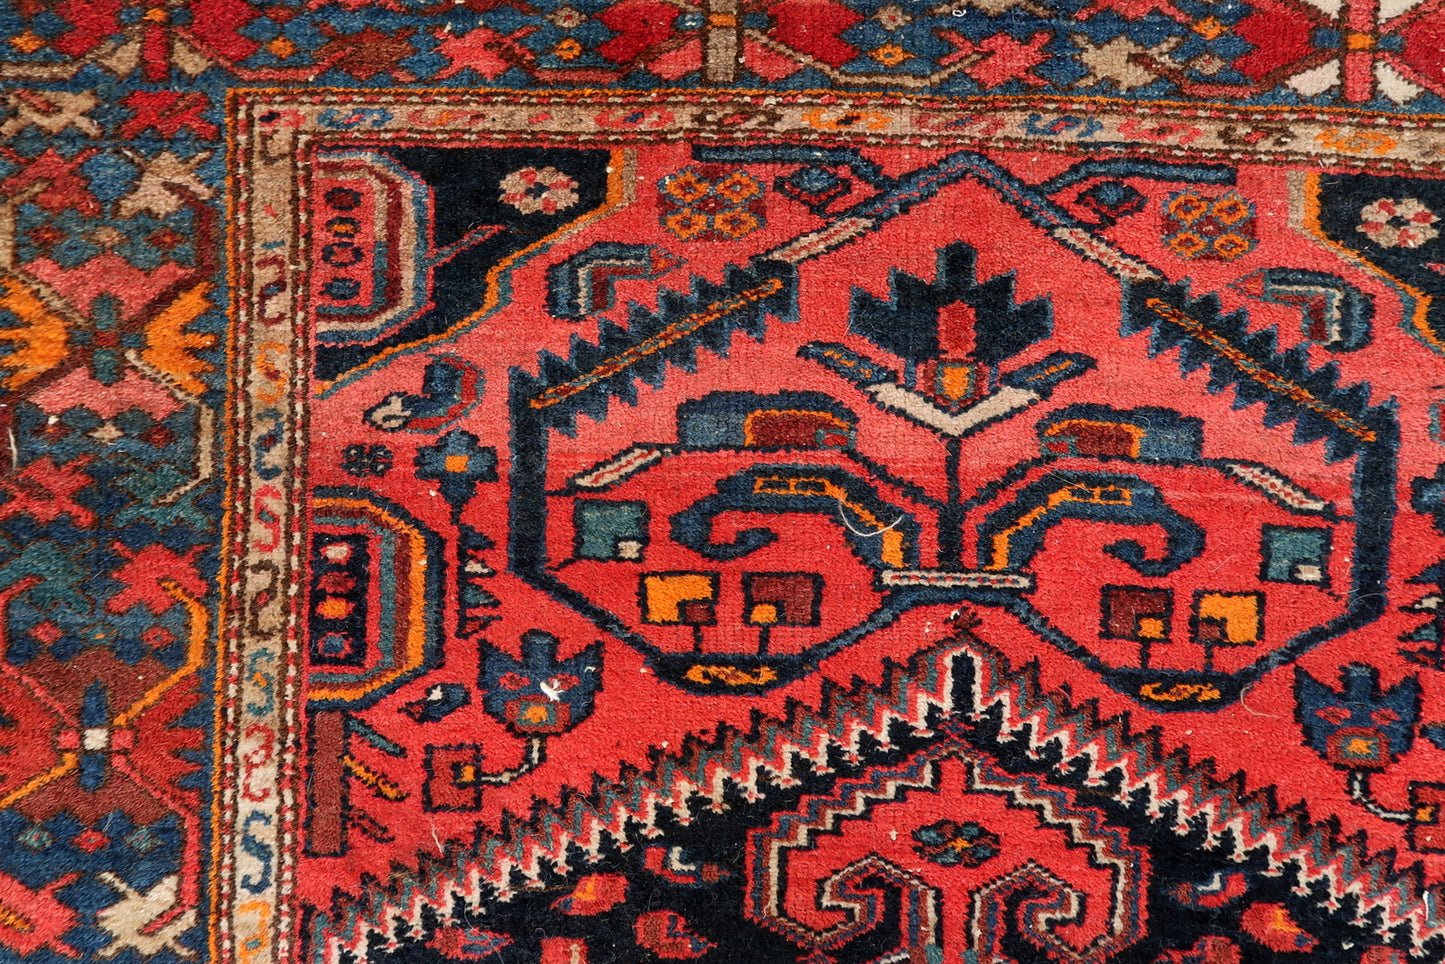 Intricate Woolen Detailing - Persian Rug Craftsmanship